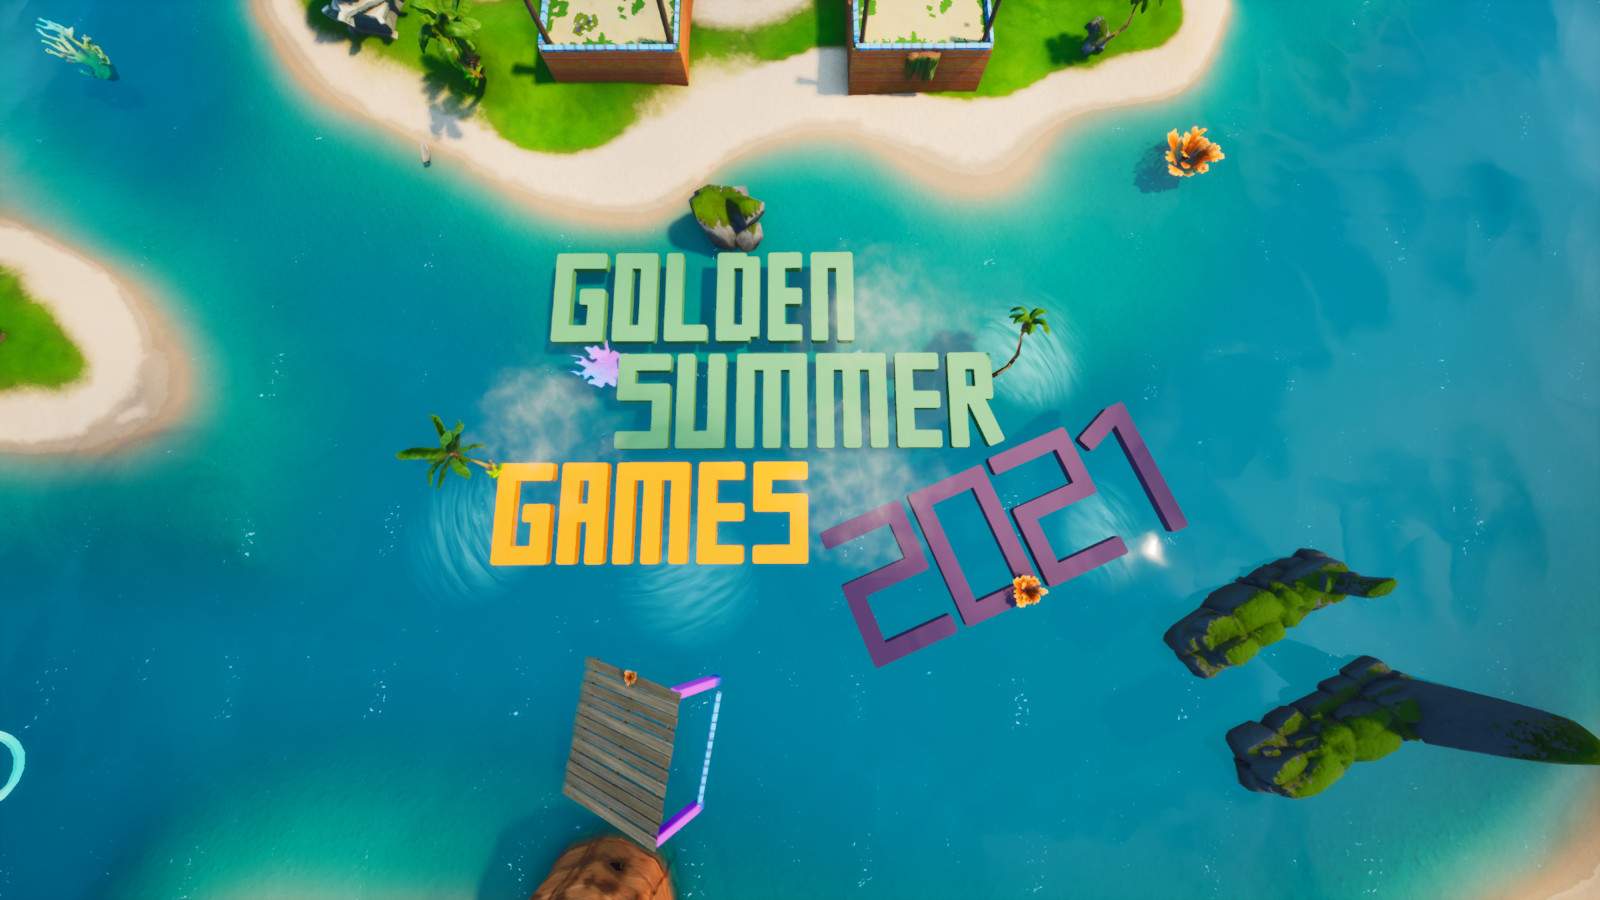 GOLDEN SUMMER GAMES 2021 !